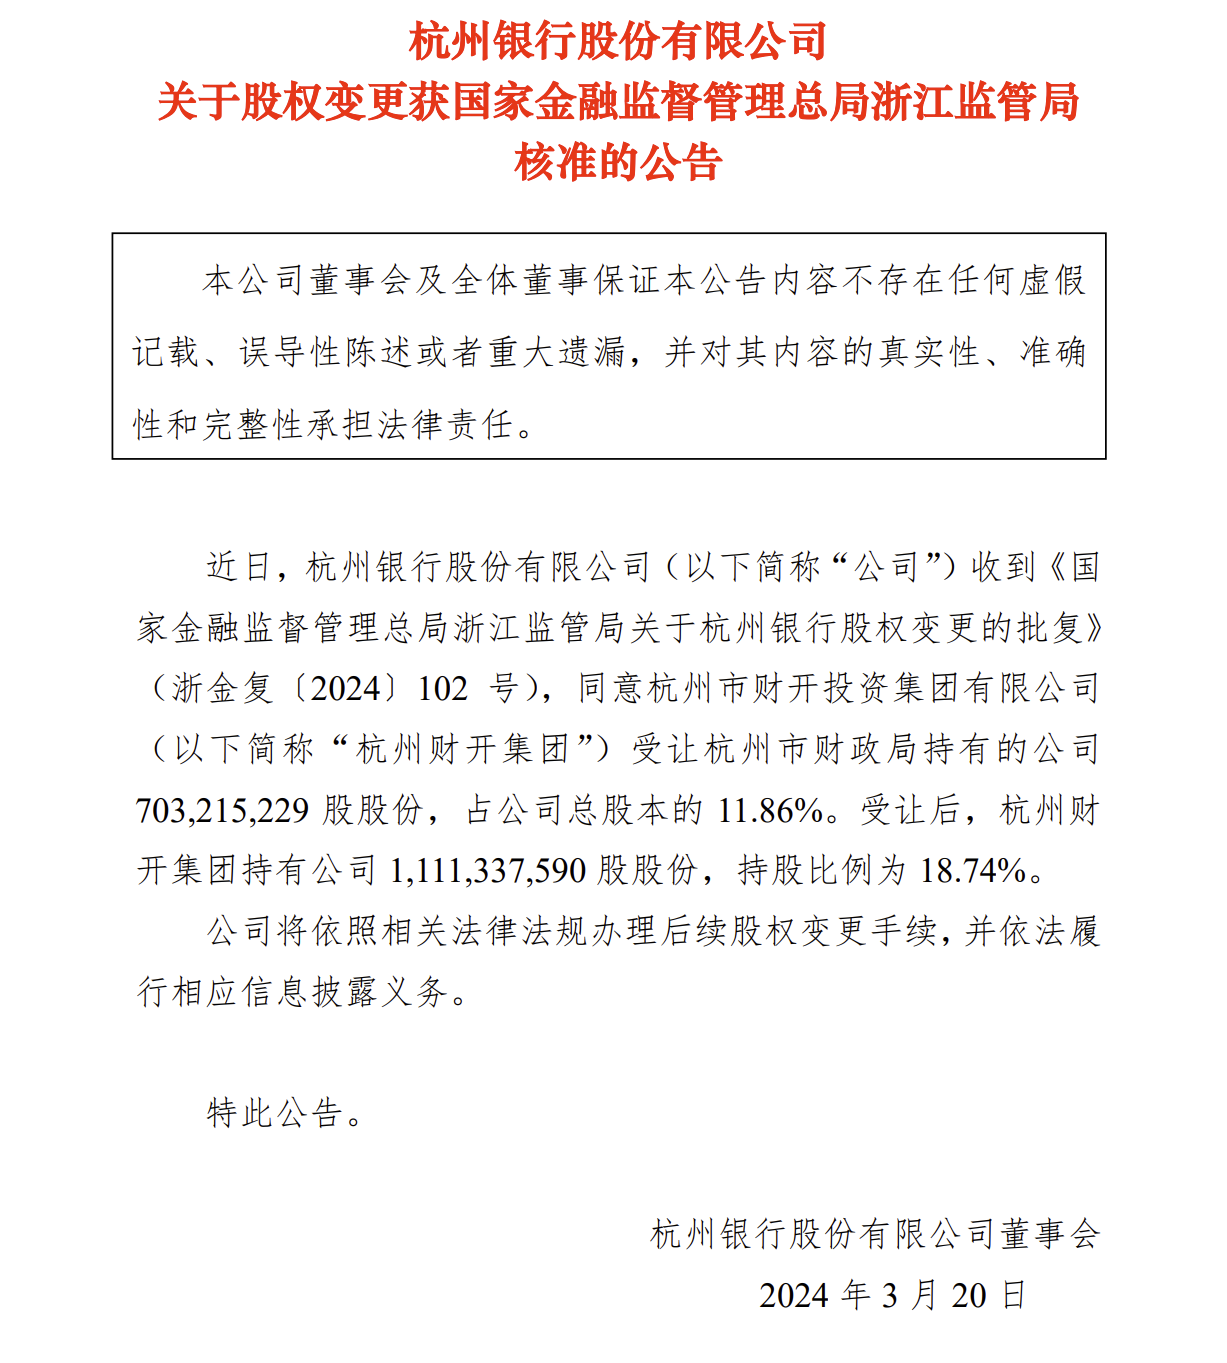 杭州银行：股权变更获批杭州财开集团持股比例升至18.74%